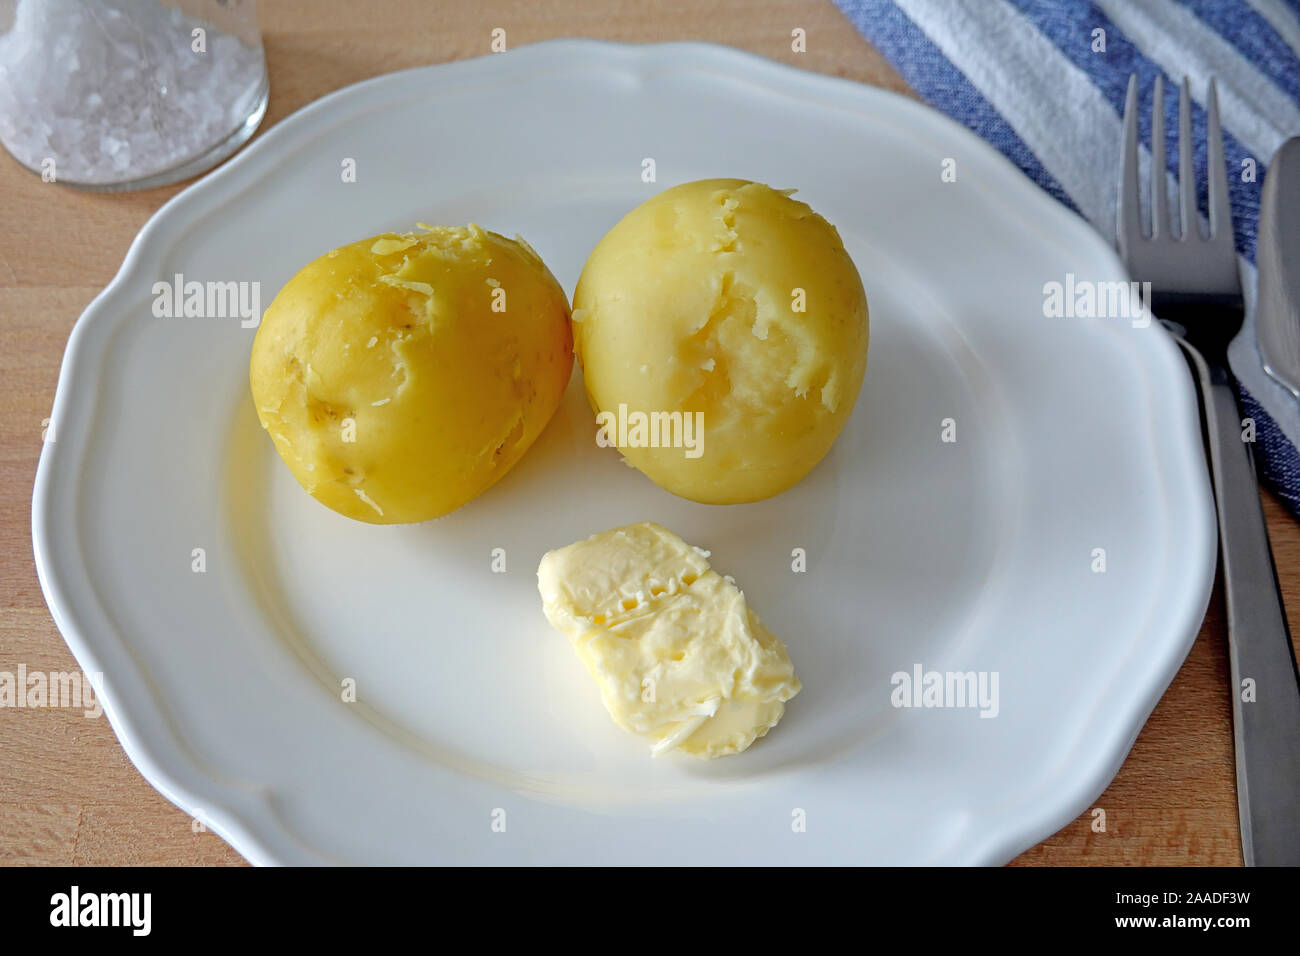 Patate cotte con burro e sale da pranzo o cena sulla piastra bianca. Cose-up Foto Stock